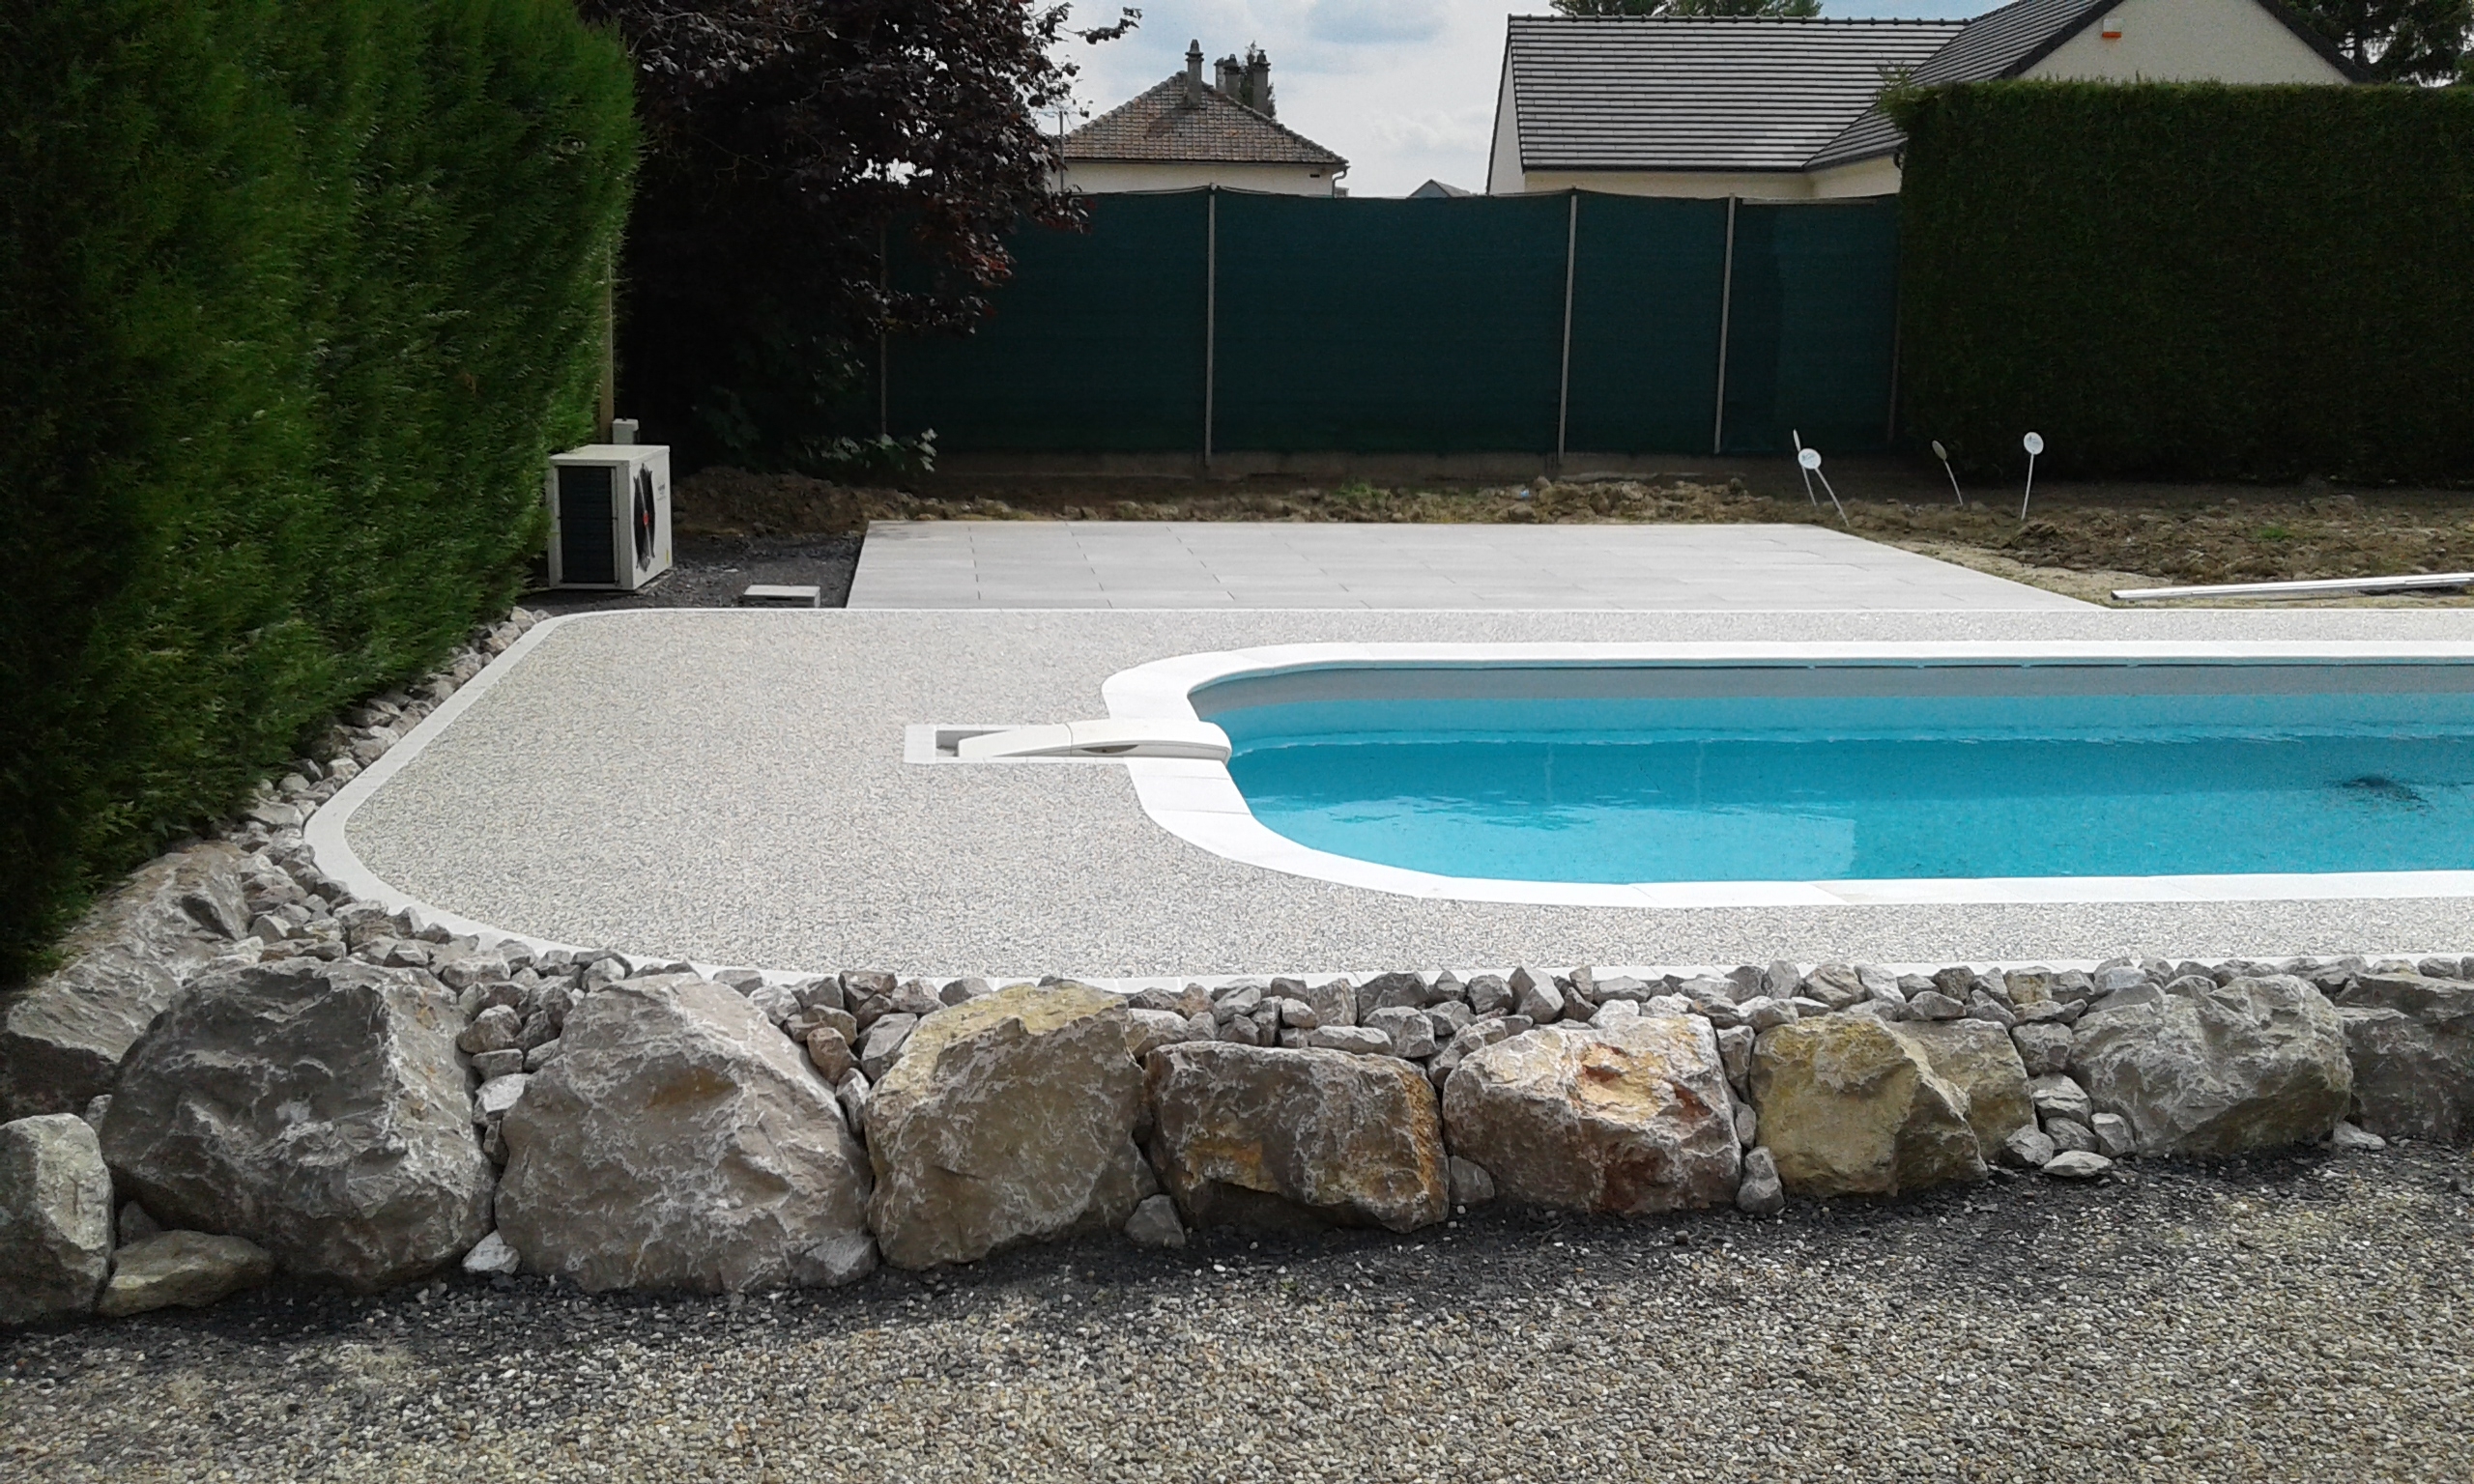 Cration Plage de piscine en Hydrostar et dalles sur plots - Oise ralise le 24/06/2019